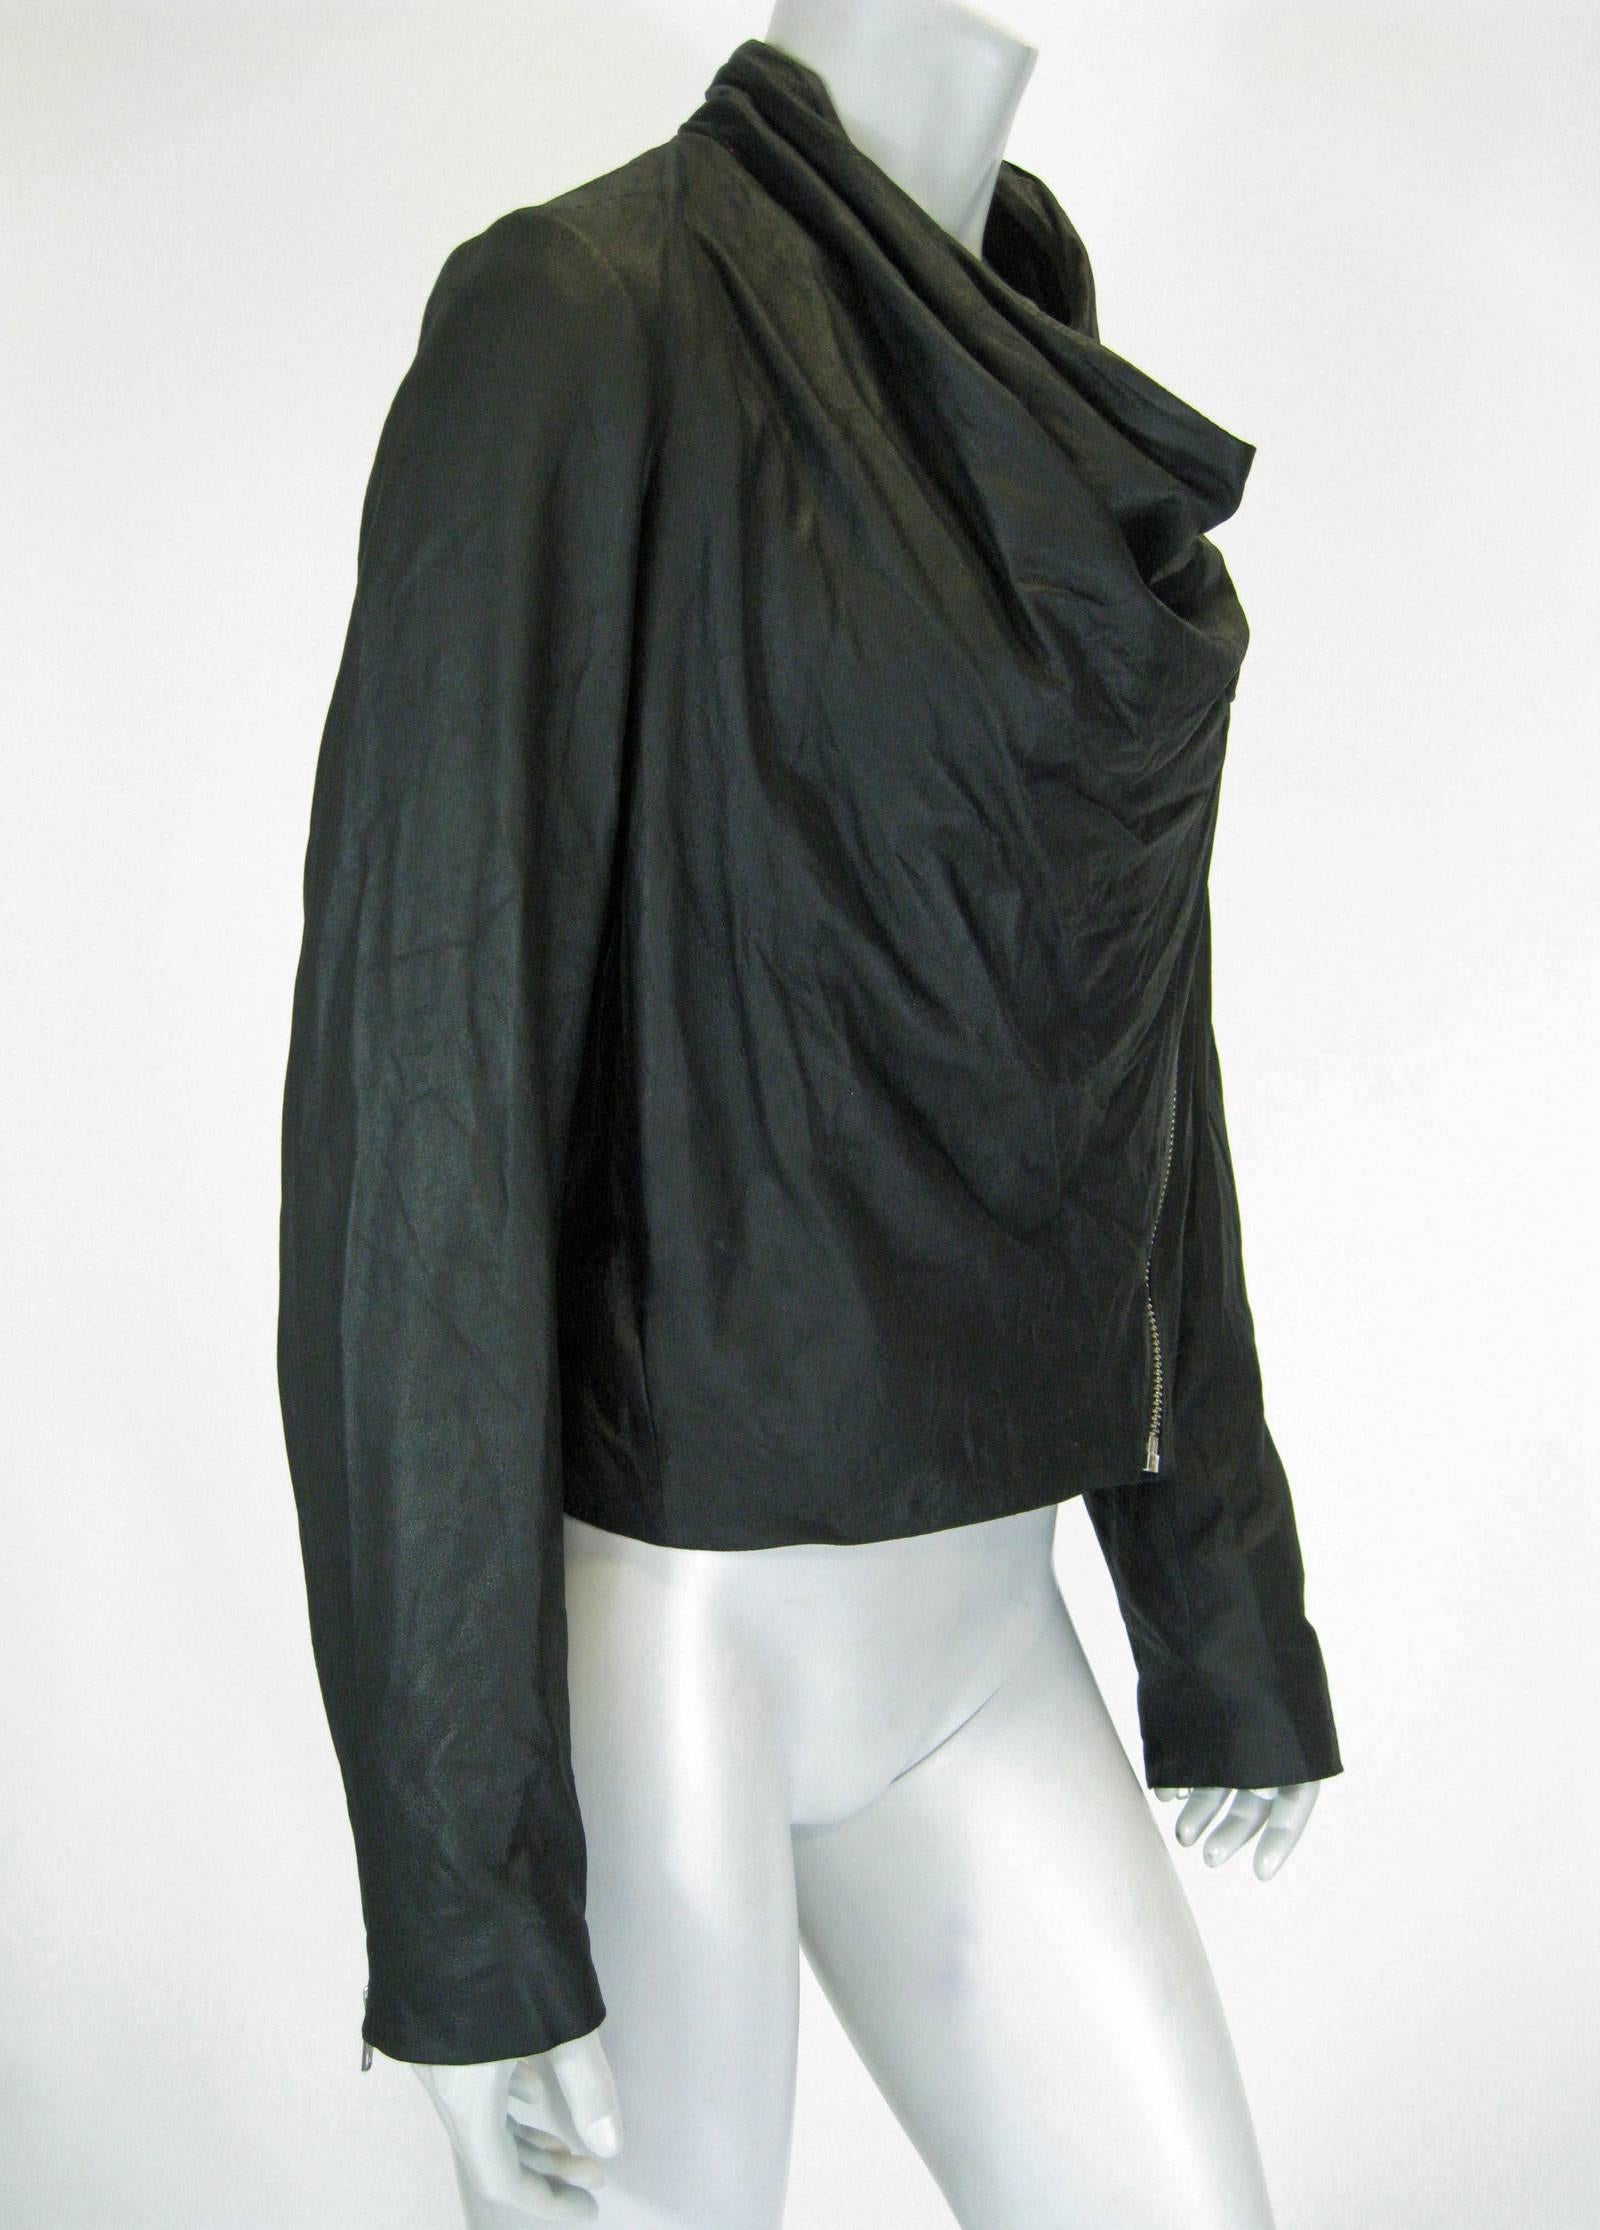 helmut lang black leather jacket